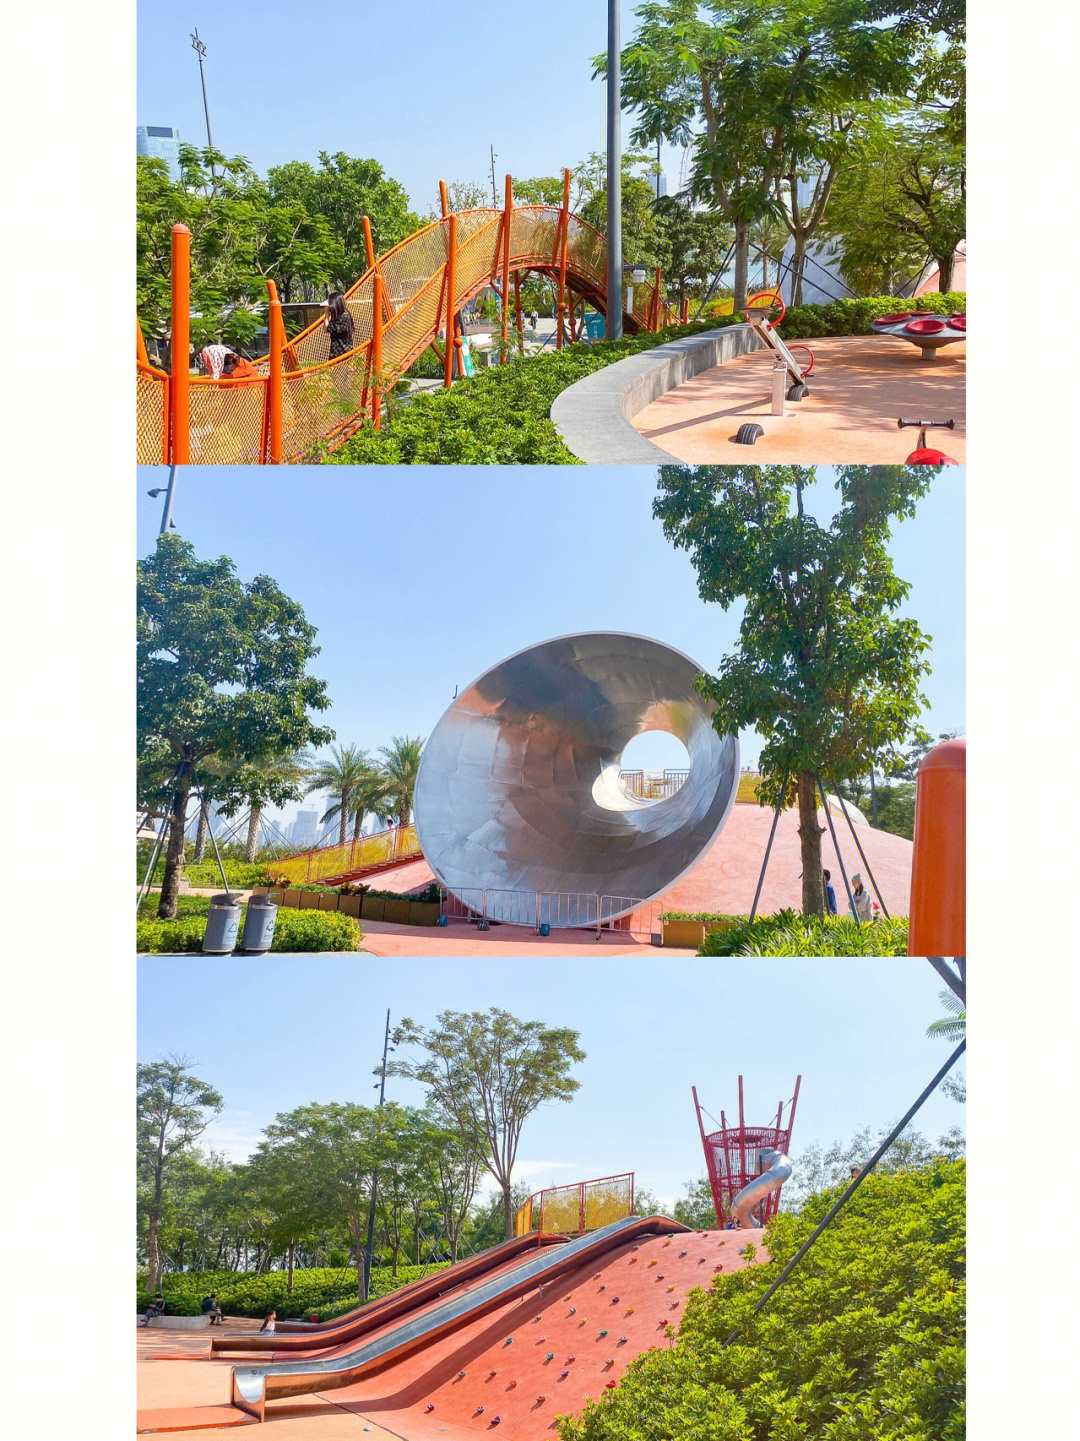 深圳欢乐港湾儿童乐园图片